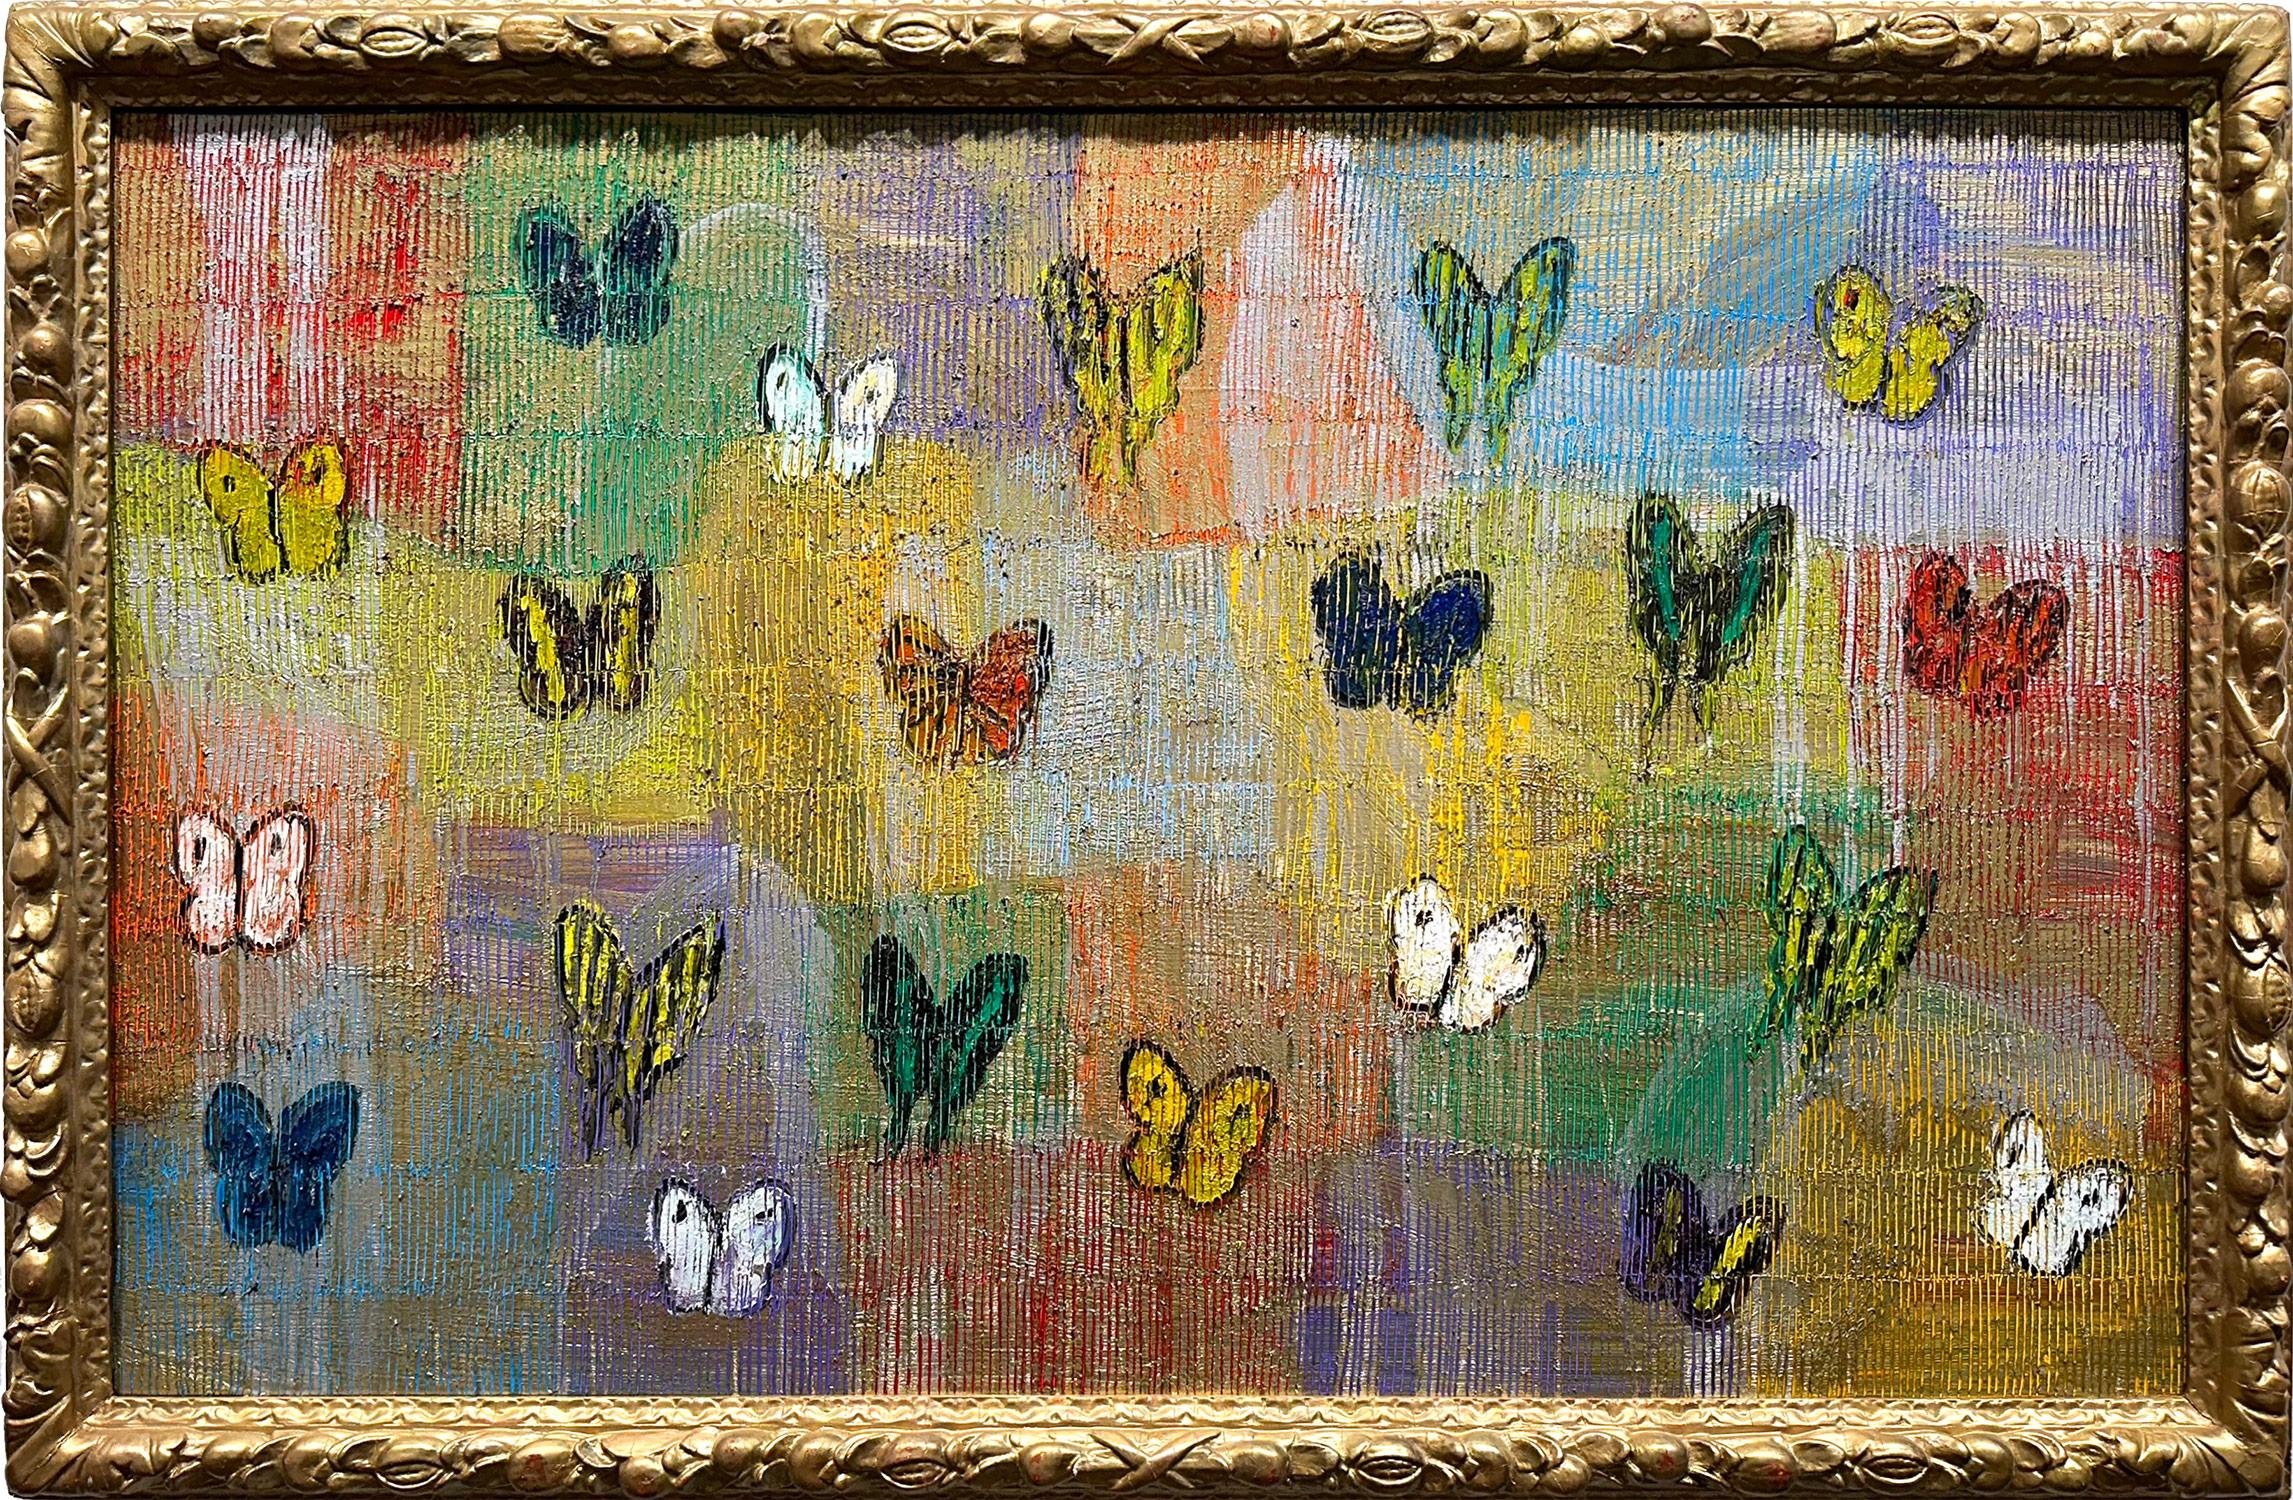 Abstract Painting Hunt Slonem - Peinture à l'huile sur toile « Question Mark & Comma » papillons sur argent et or